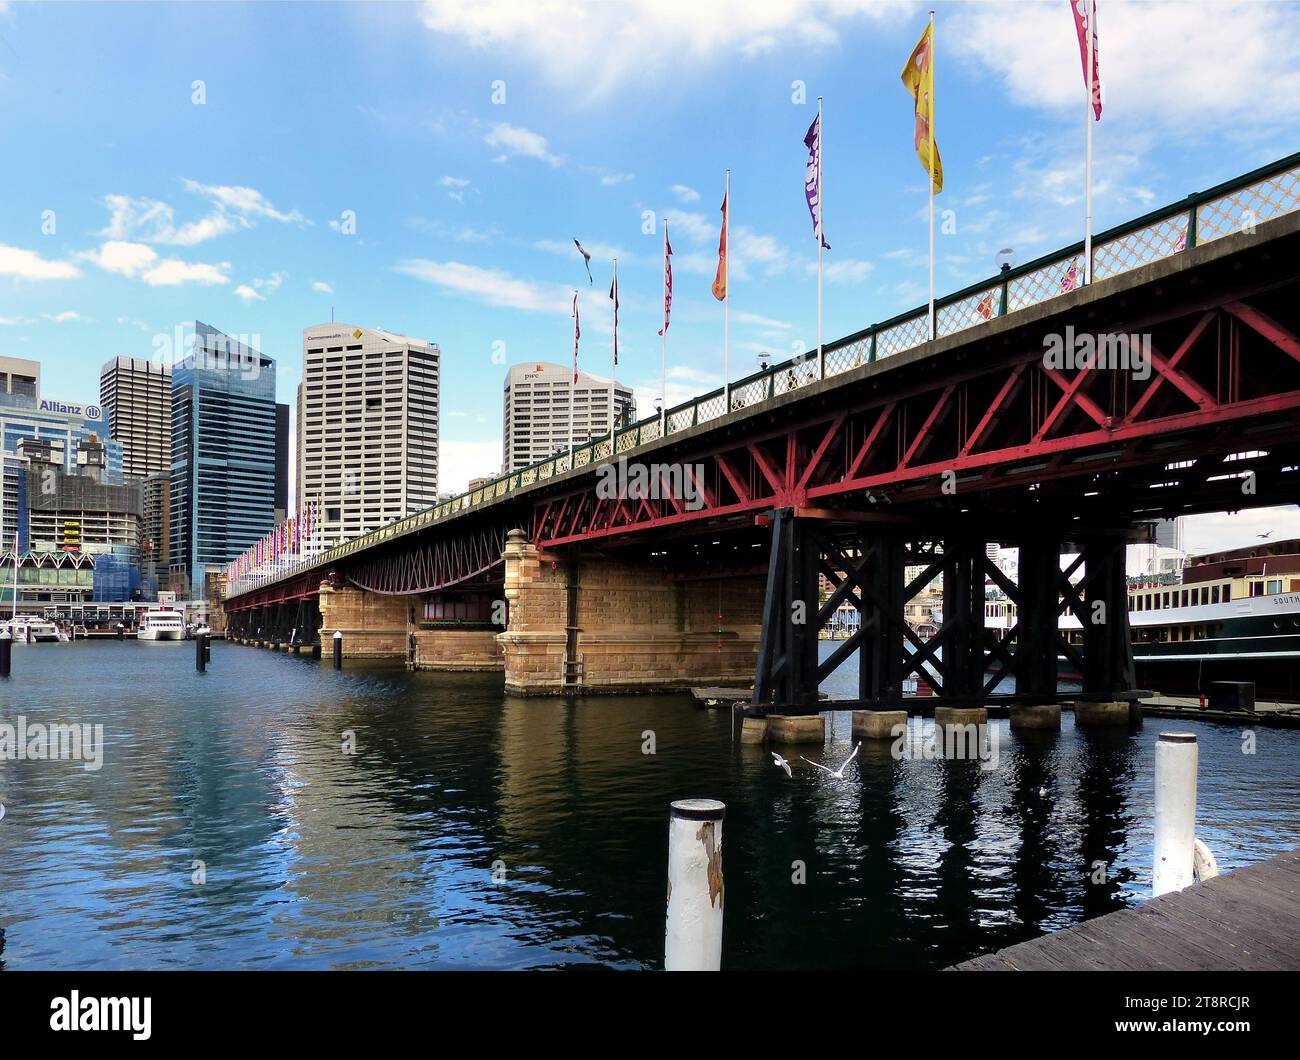 Pyrmont Bridge. Darling Harbour Sydney, die Pyrmont Bridge, eine Pendelbrücke über die Cockle Bay, liegt im Darling Harbour, Teil von Port Jackson, westlich des zentralen Geschäftsviertels in Sydney, New South Wales, Australien Stockfoto